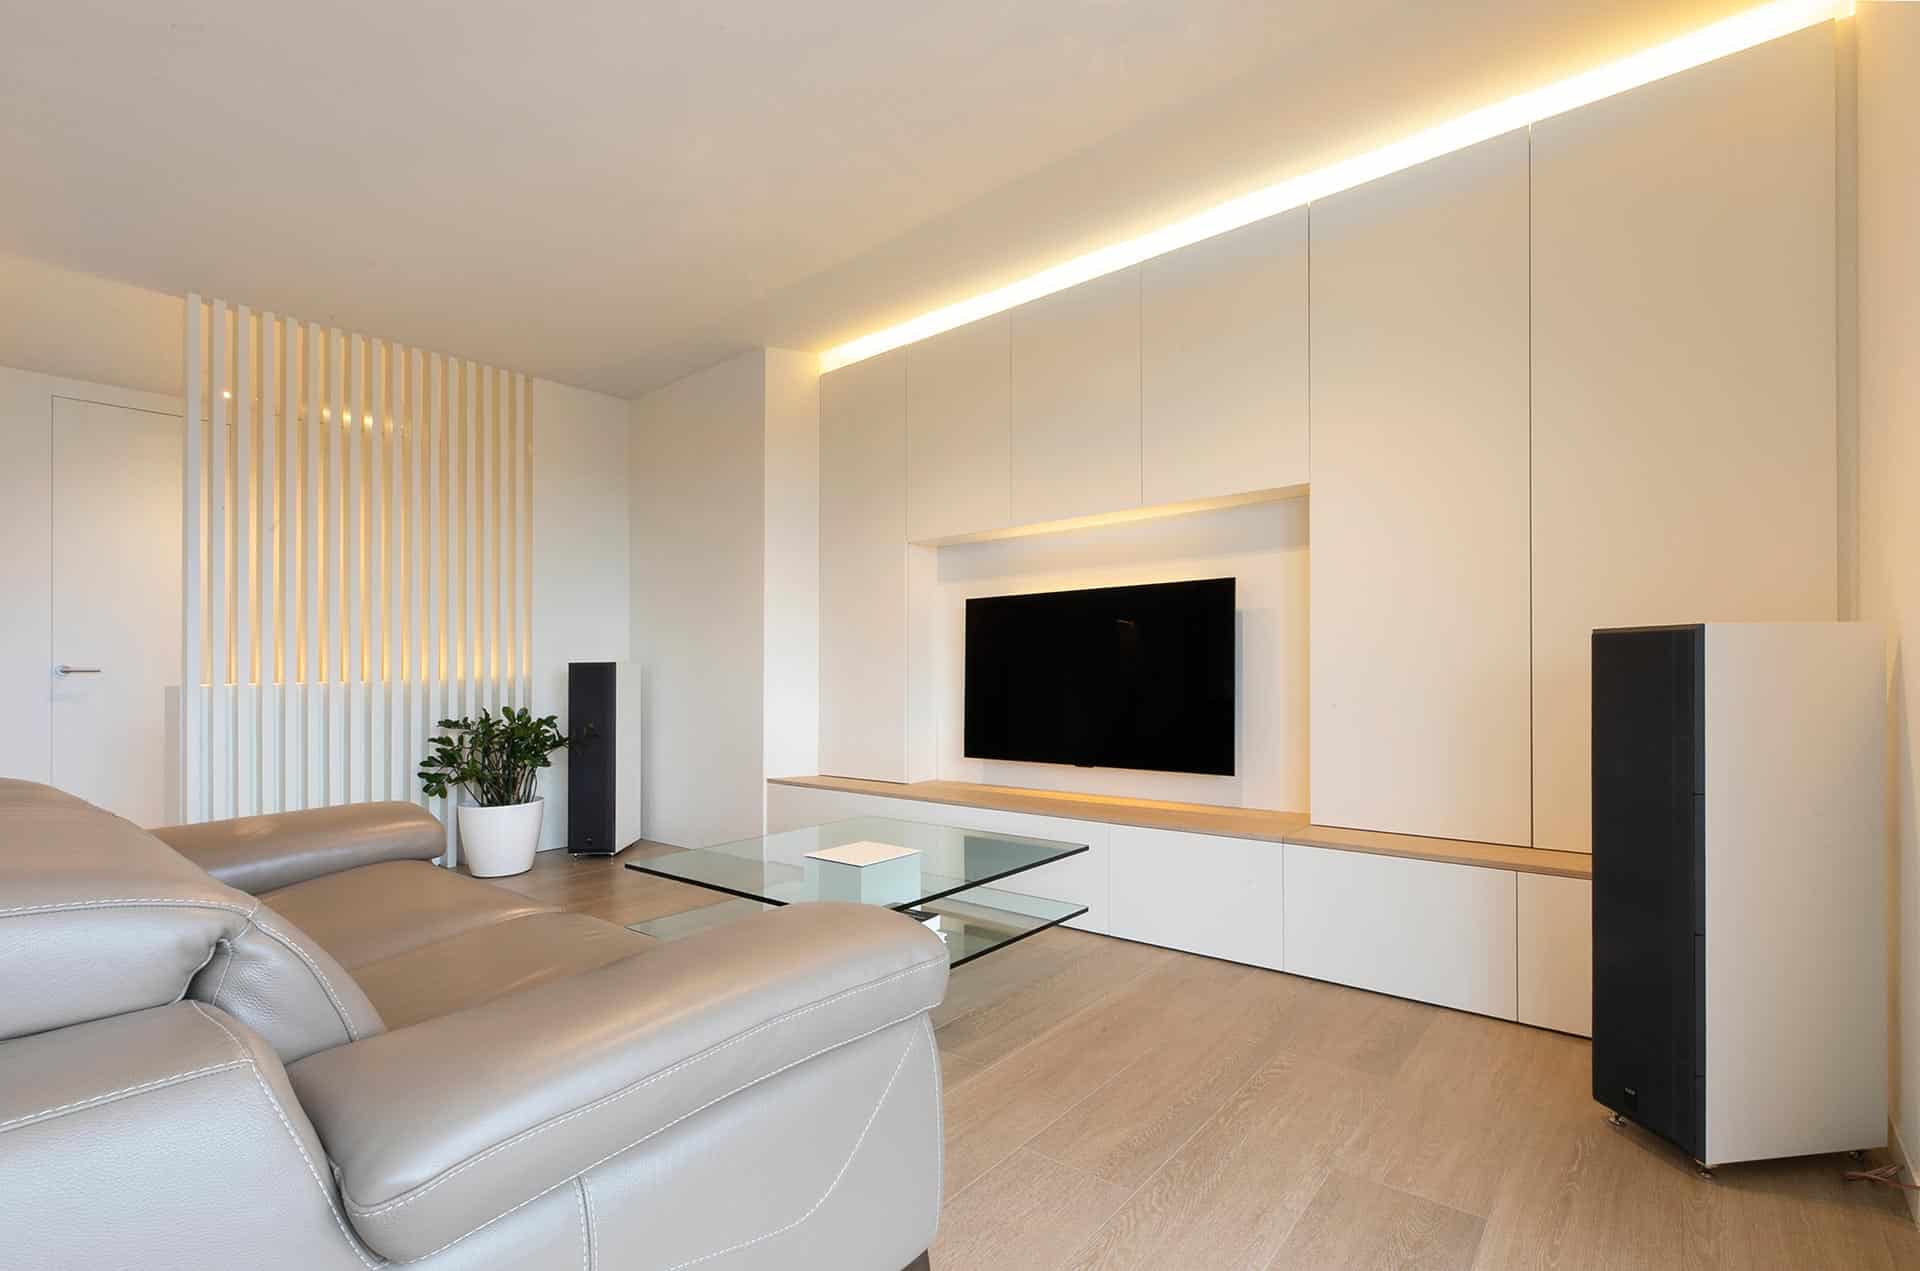 Reforma de casa en Santander minimalista blanco y madera diseñada por Moah Arquitectos en Cantabria